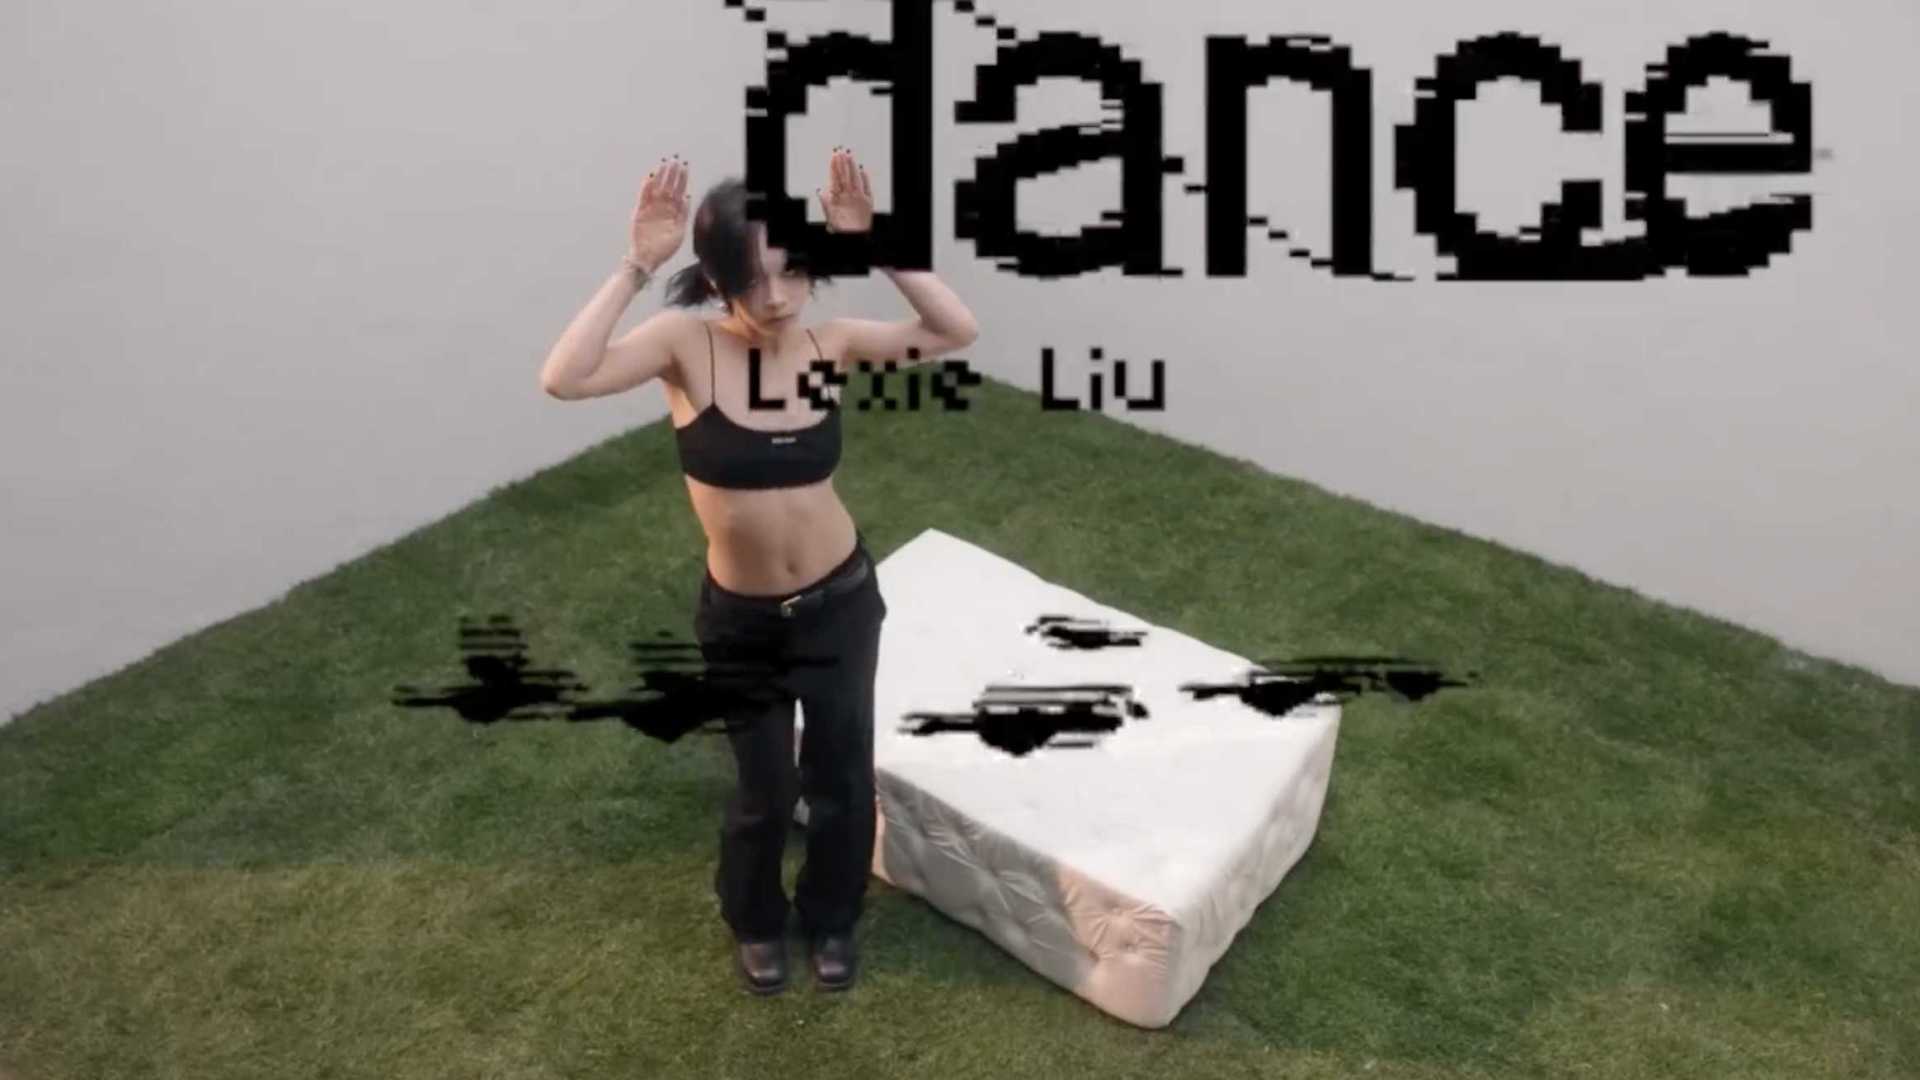 刘柏辛Lexie - Dance Dance (MV)